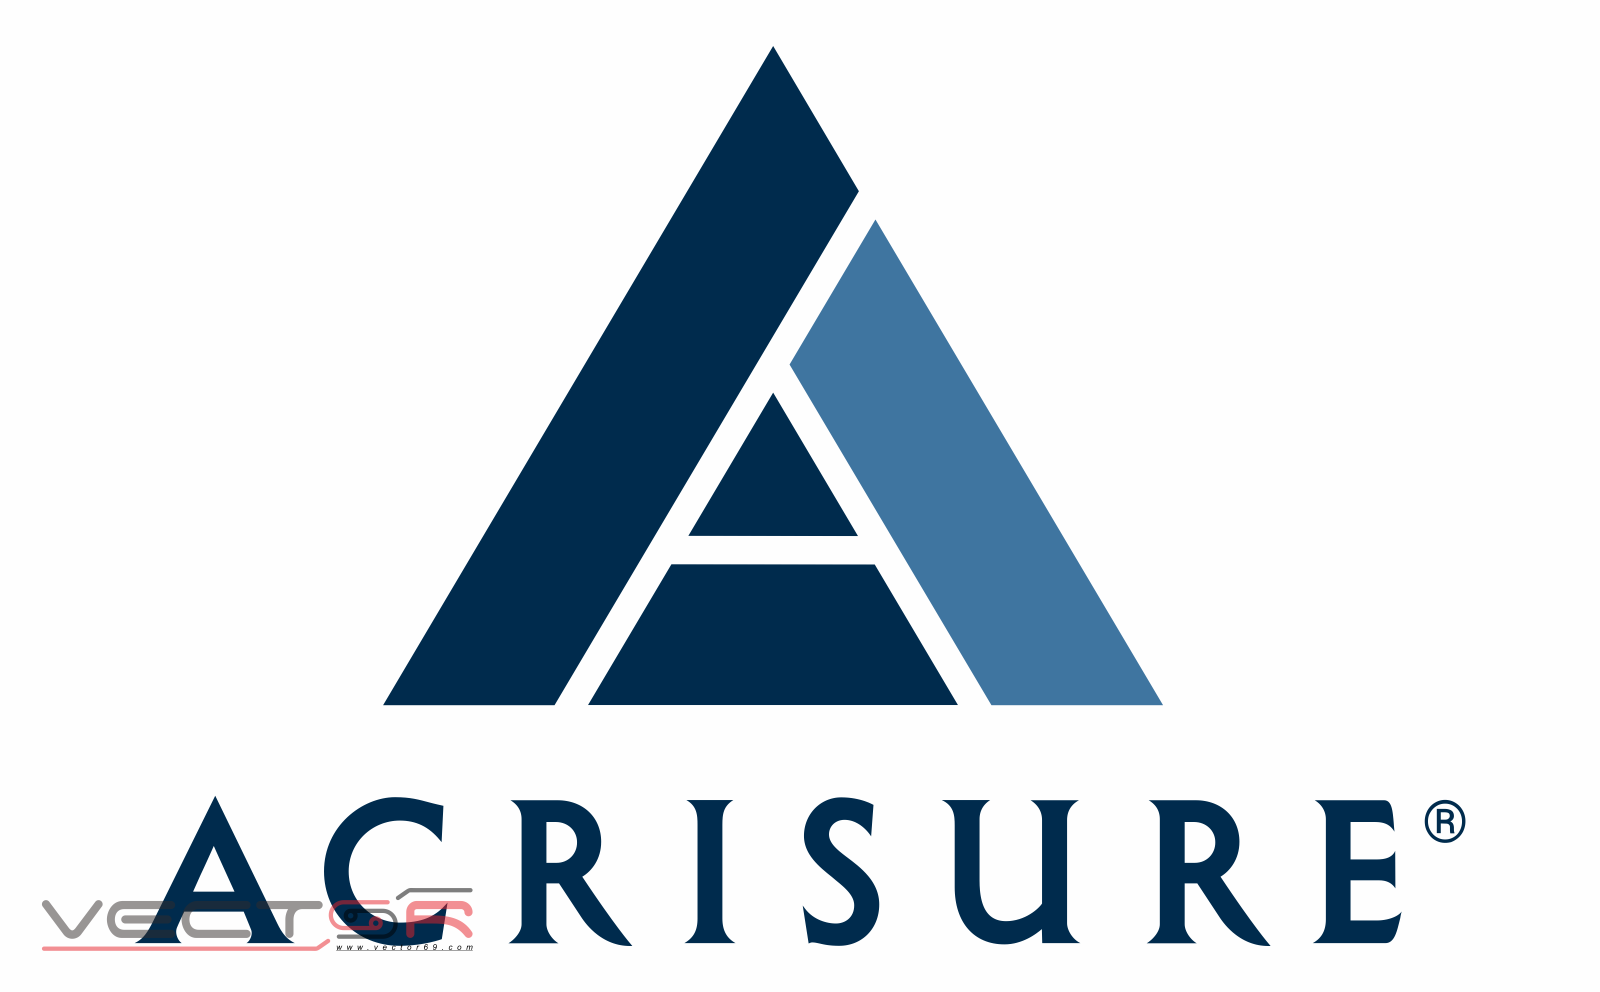 Acrisure Logo - Download Transparent Images, Portable Network Graphics (.PNG)